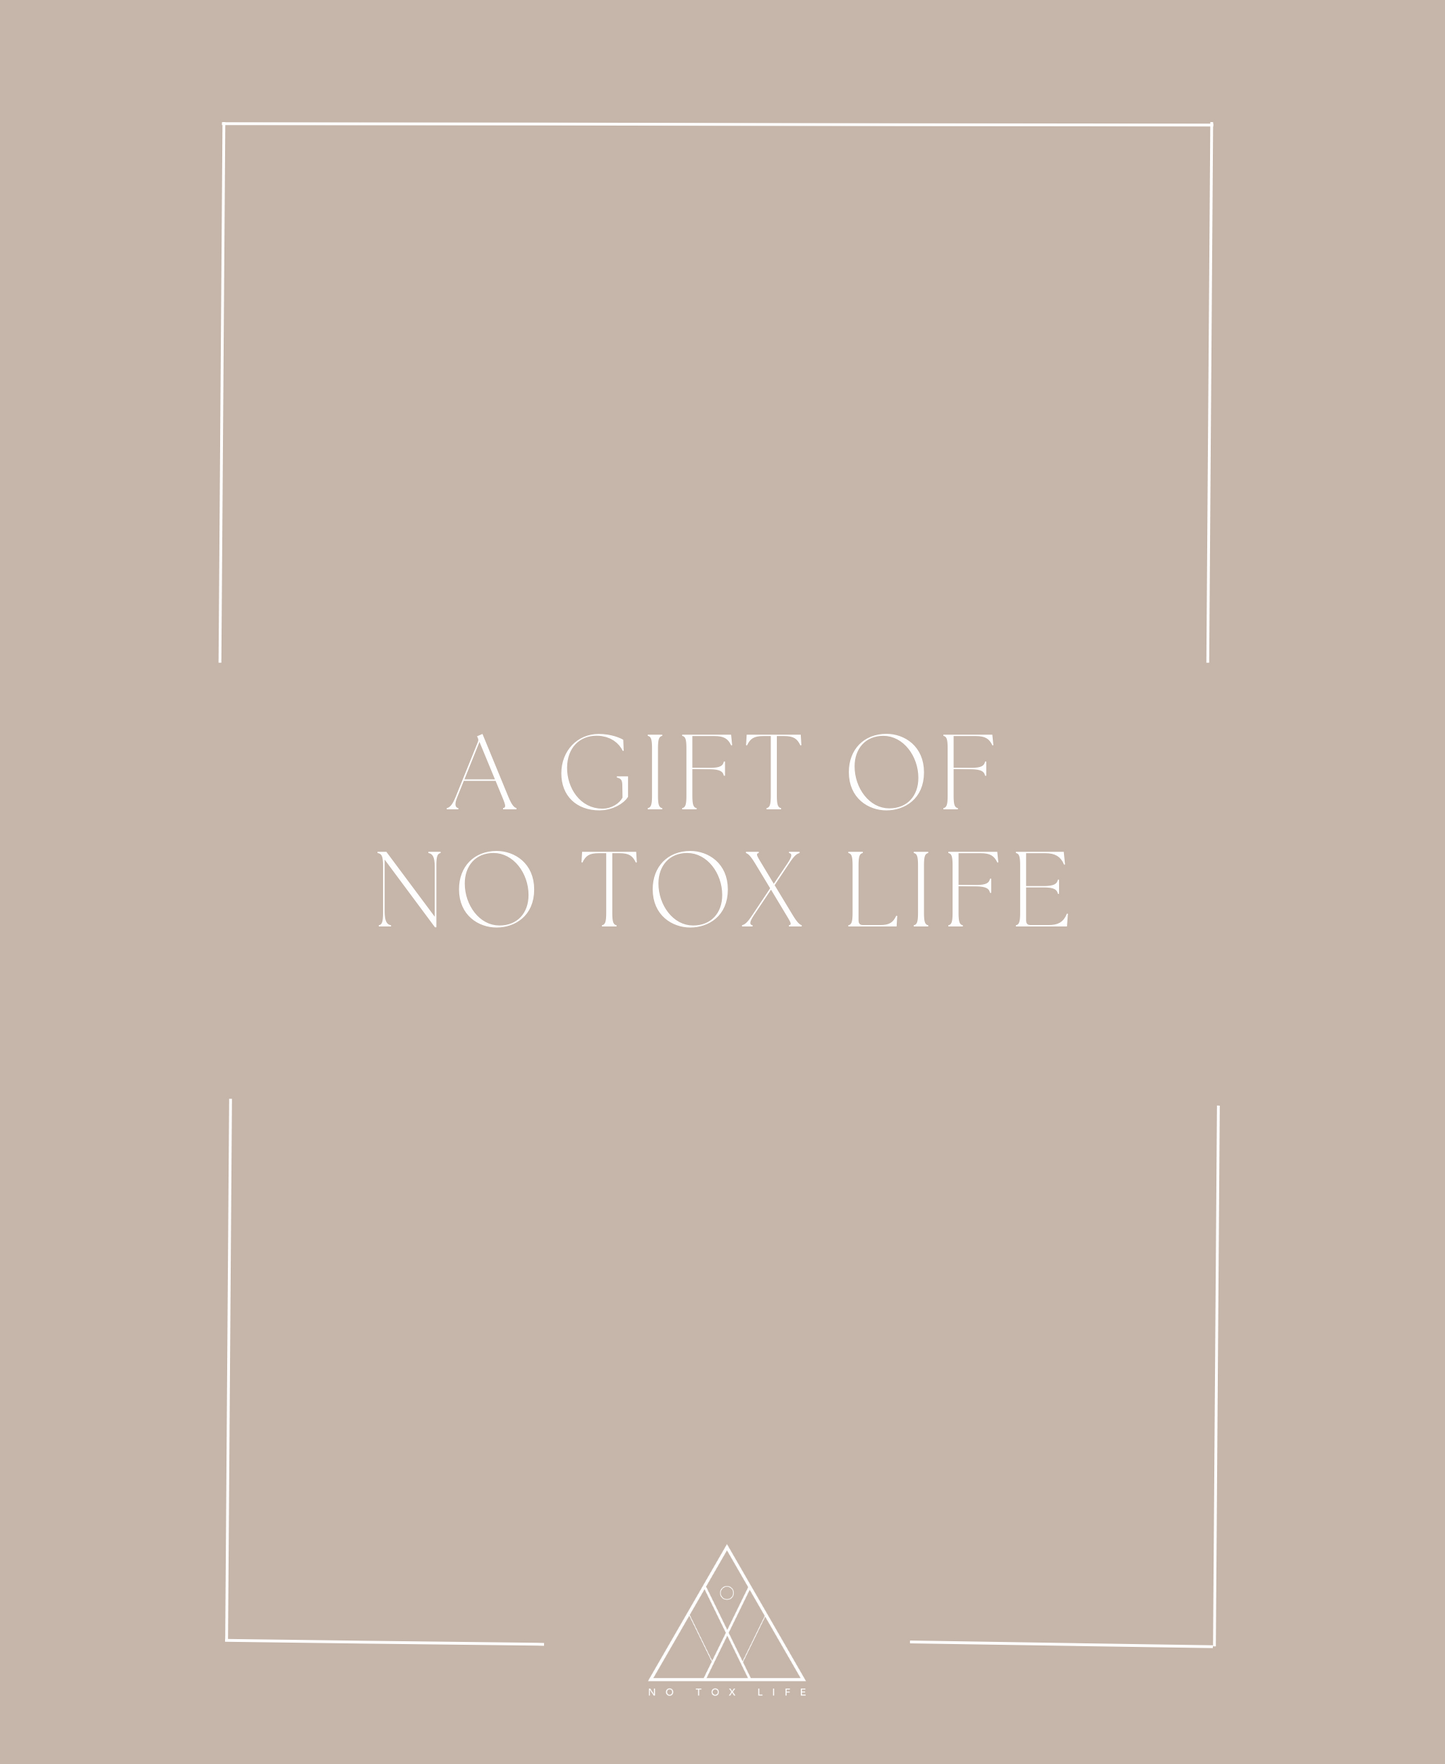 No Tox Life Digital Gift Card